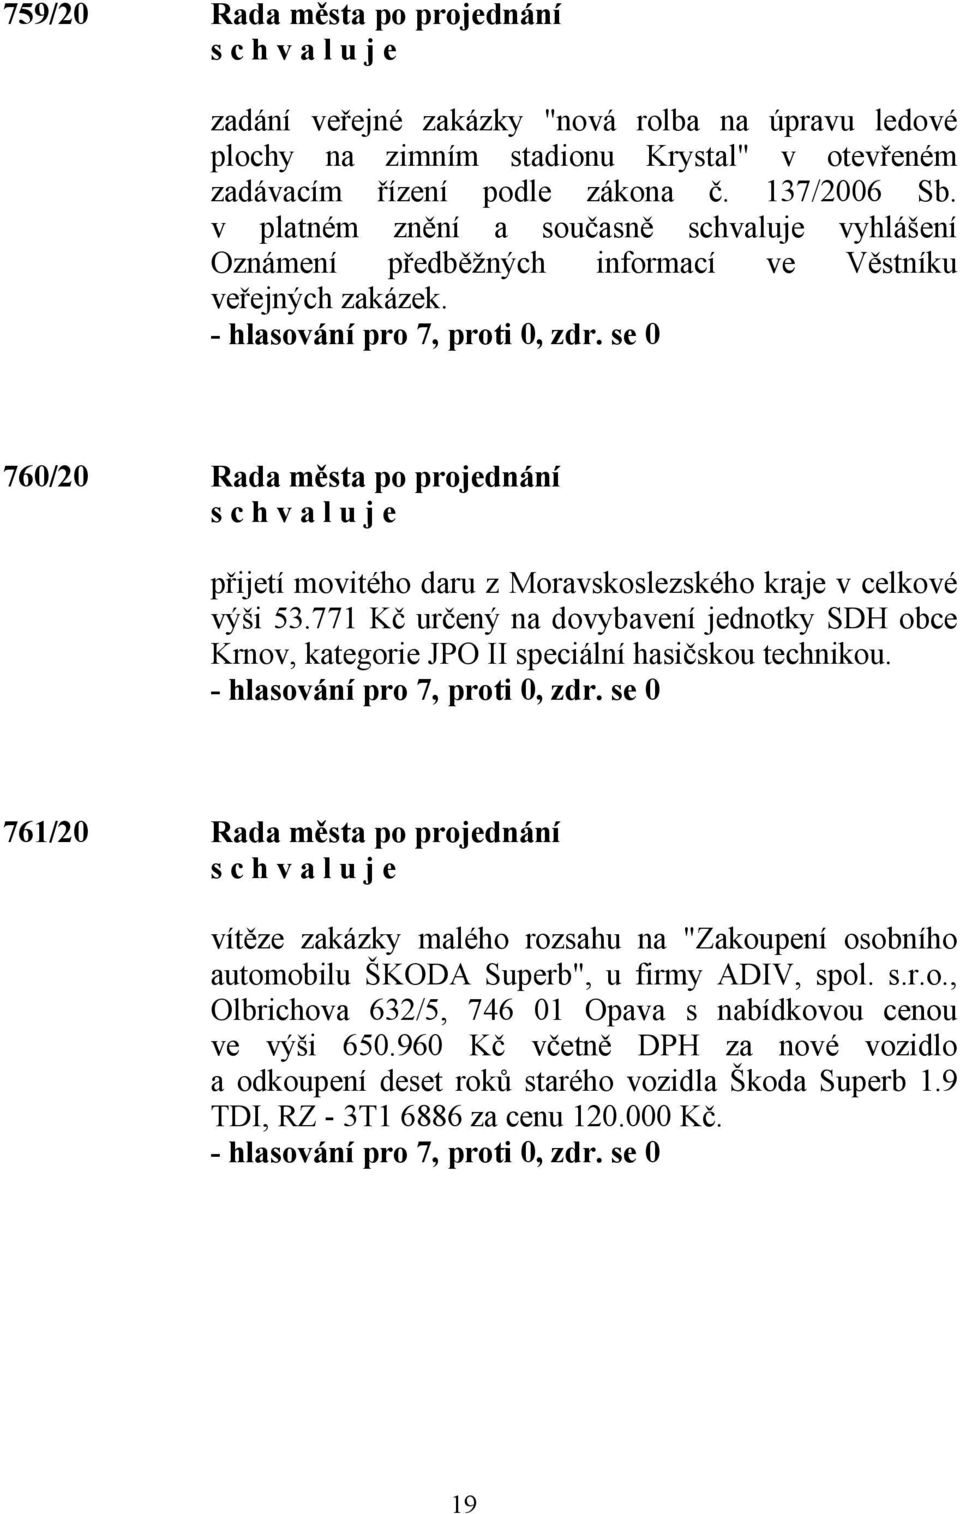 760/20 Rada města po projednání přijetí movitého daru z Moravskoslezského kraje v celkové výši 53.771 Kč určený na dovybavení jednotky SDH obce Krnov, kategorie JPO II speciální hasičskou technikou.